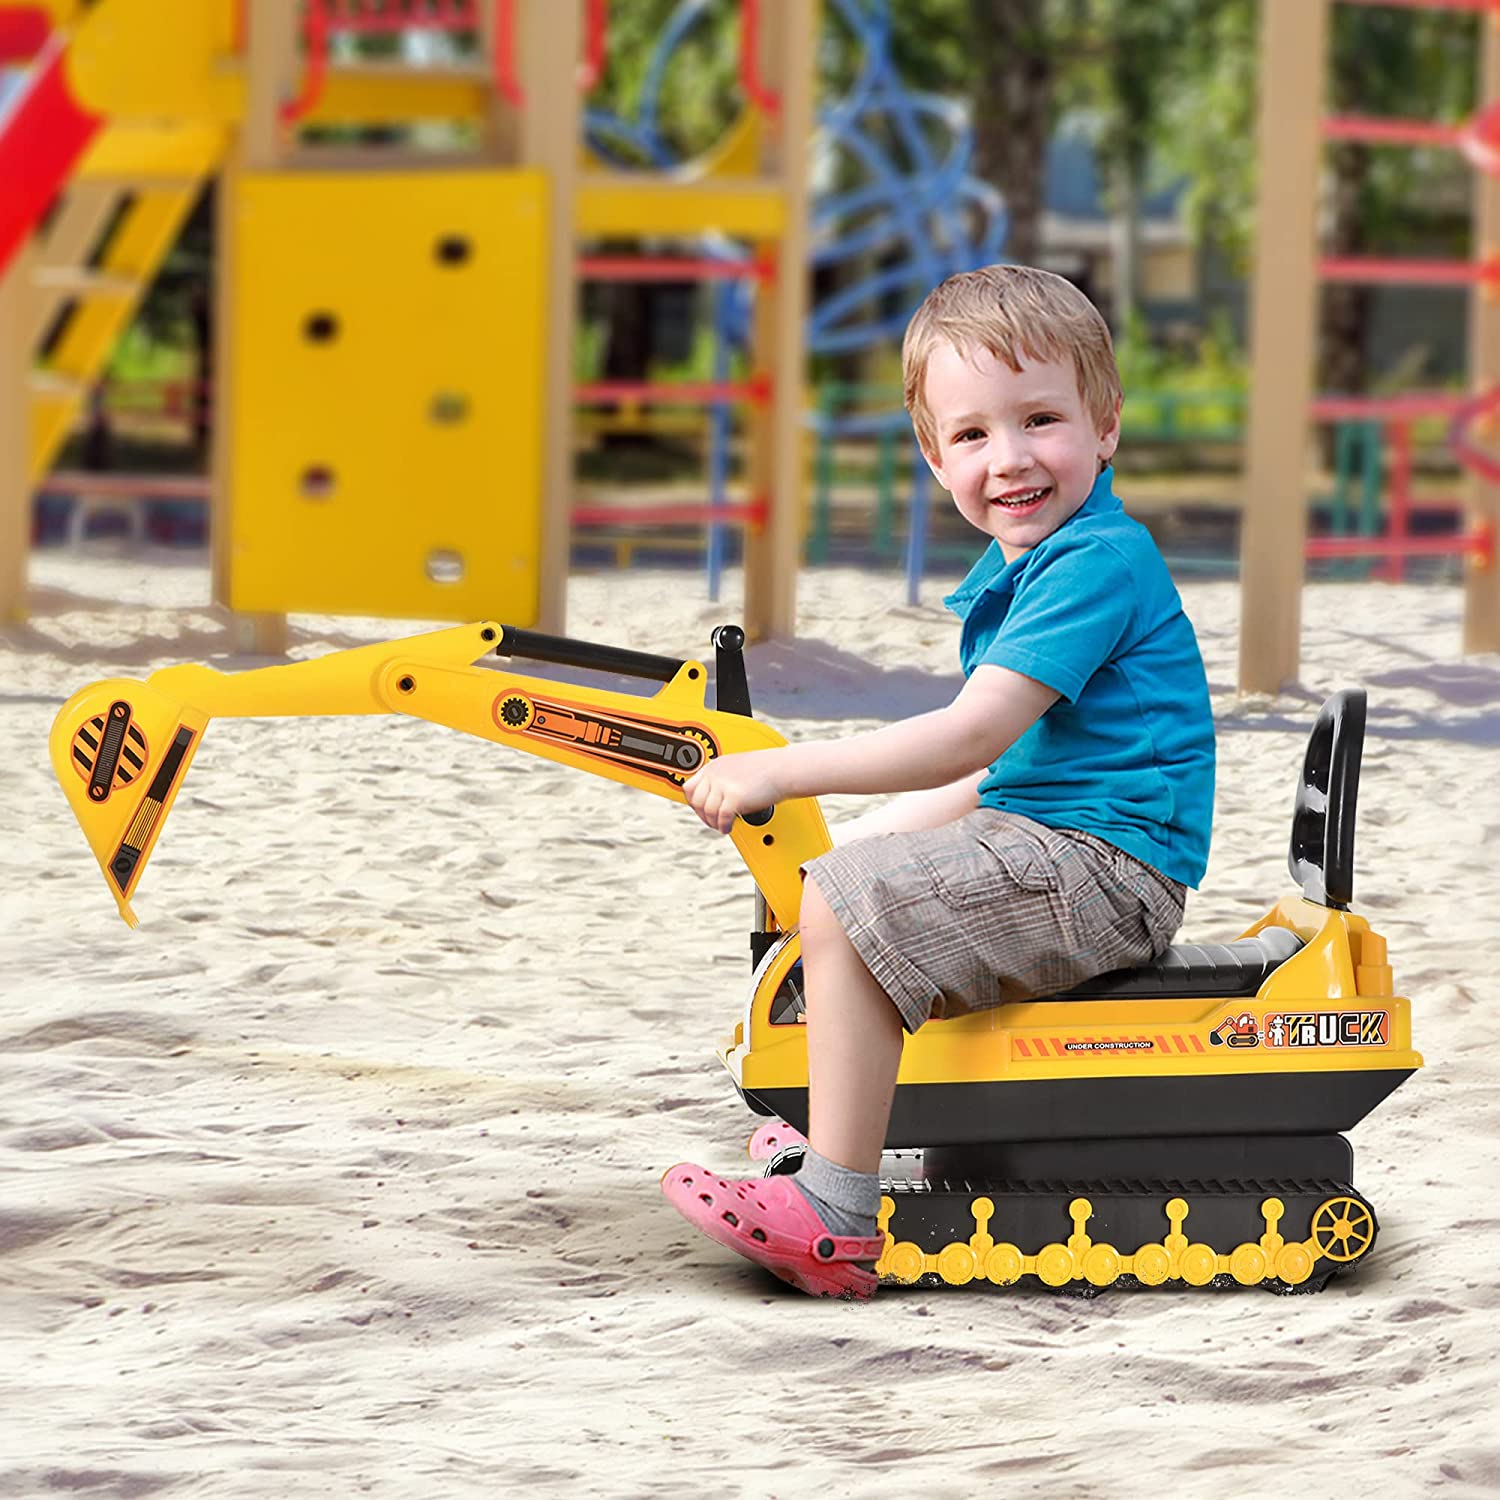 Escavatore Ruspa - Giocattolo Cavalcabile per Bambini